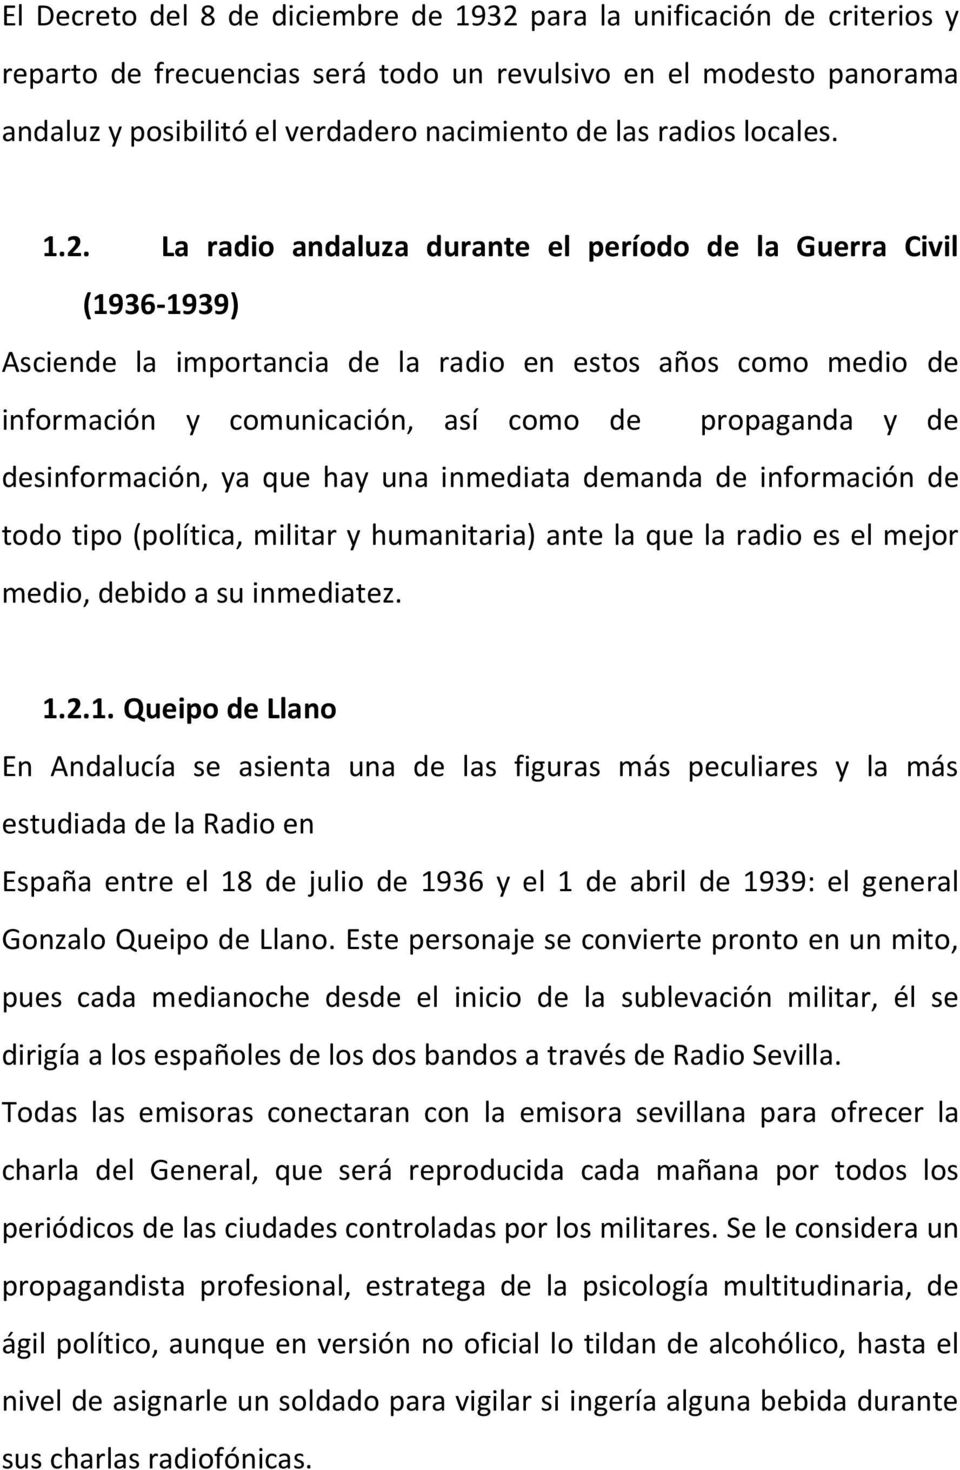 La radio andaluza durante el período de la Guerra Civil (1936-1939) Asciende la importancia de la radio en estos años como medio de información y comunicación, así como de propaganda y de